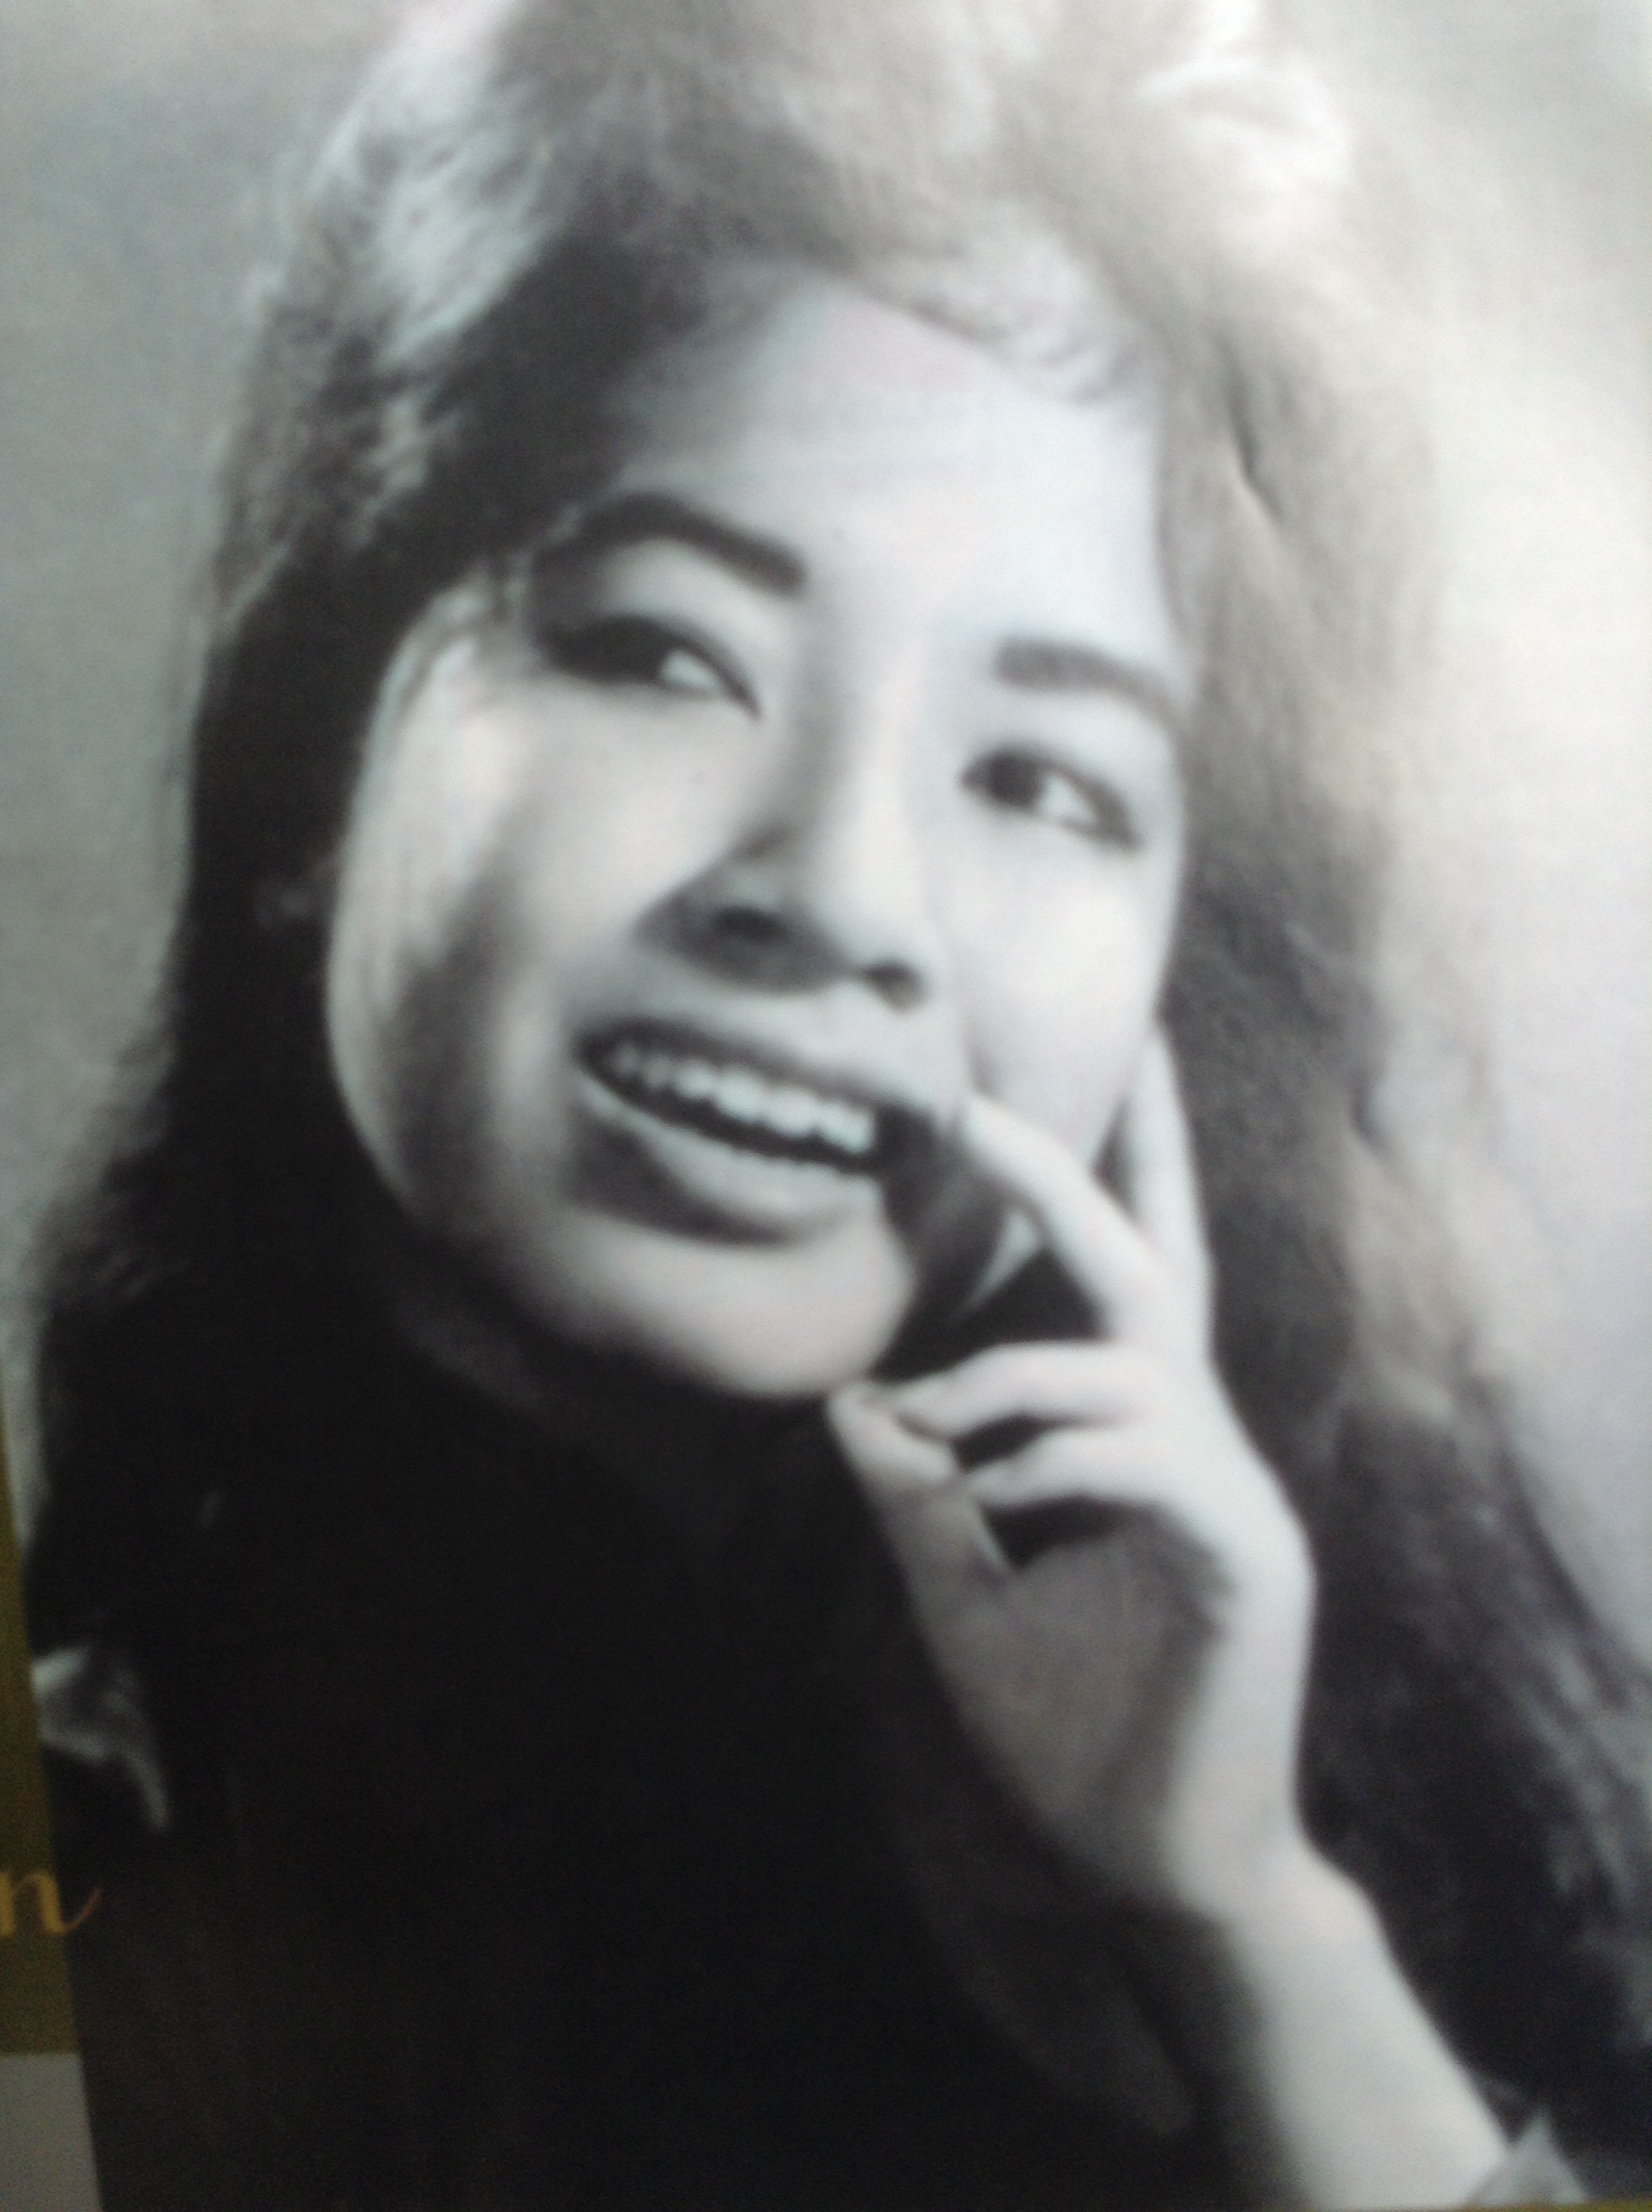 Cùng chiêm ngưỡng sự thanh lịch, điềm tĩnh và sức mạnh của những phụ nữ Việt khi được tái hiện đầy nghệ thuật với ảnh đen trắng.